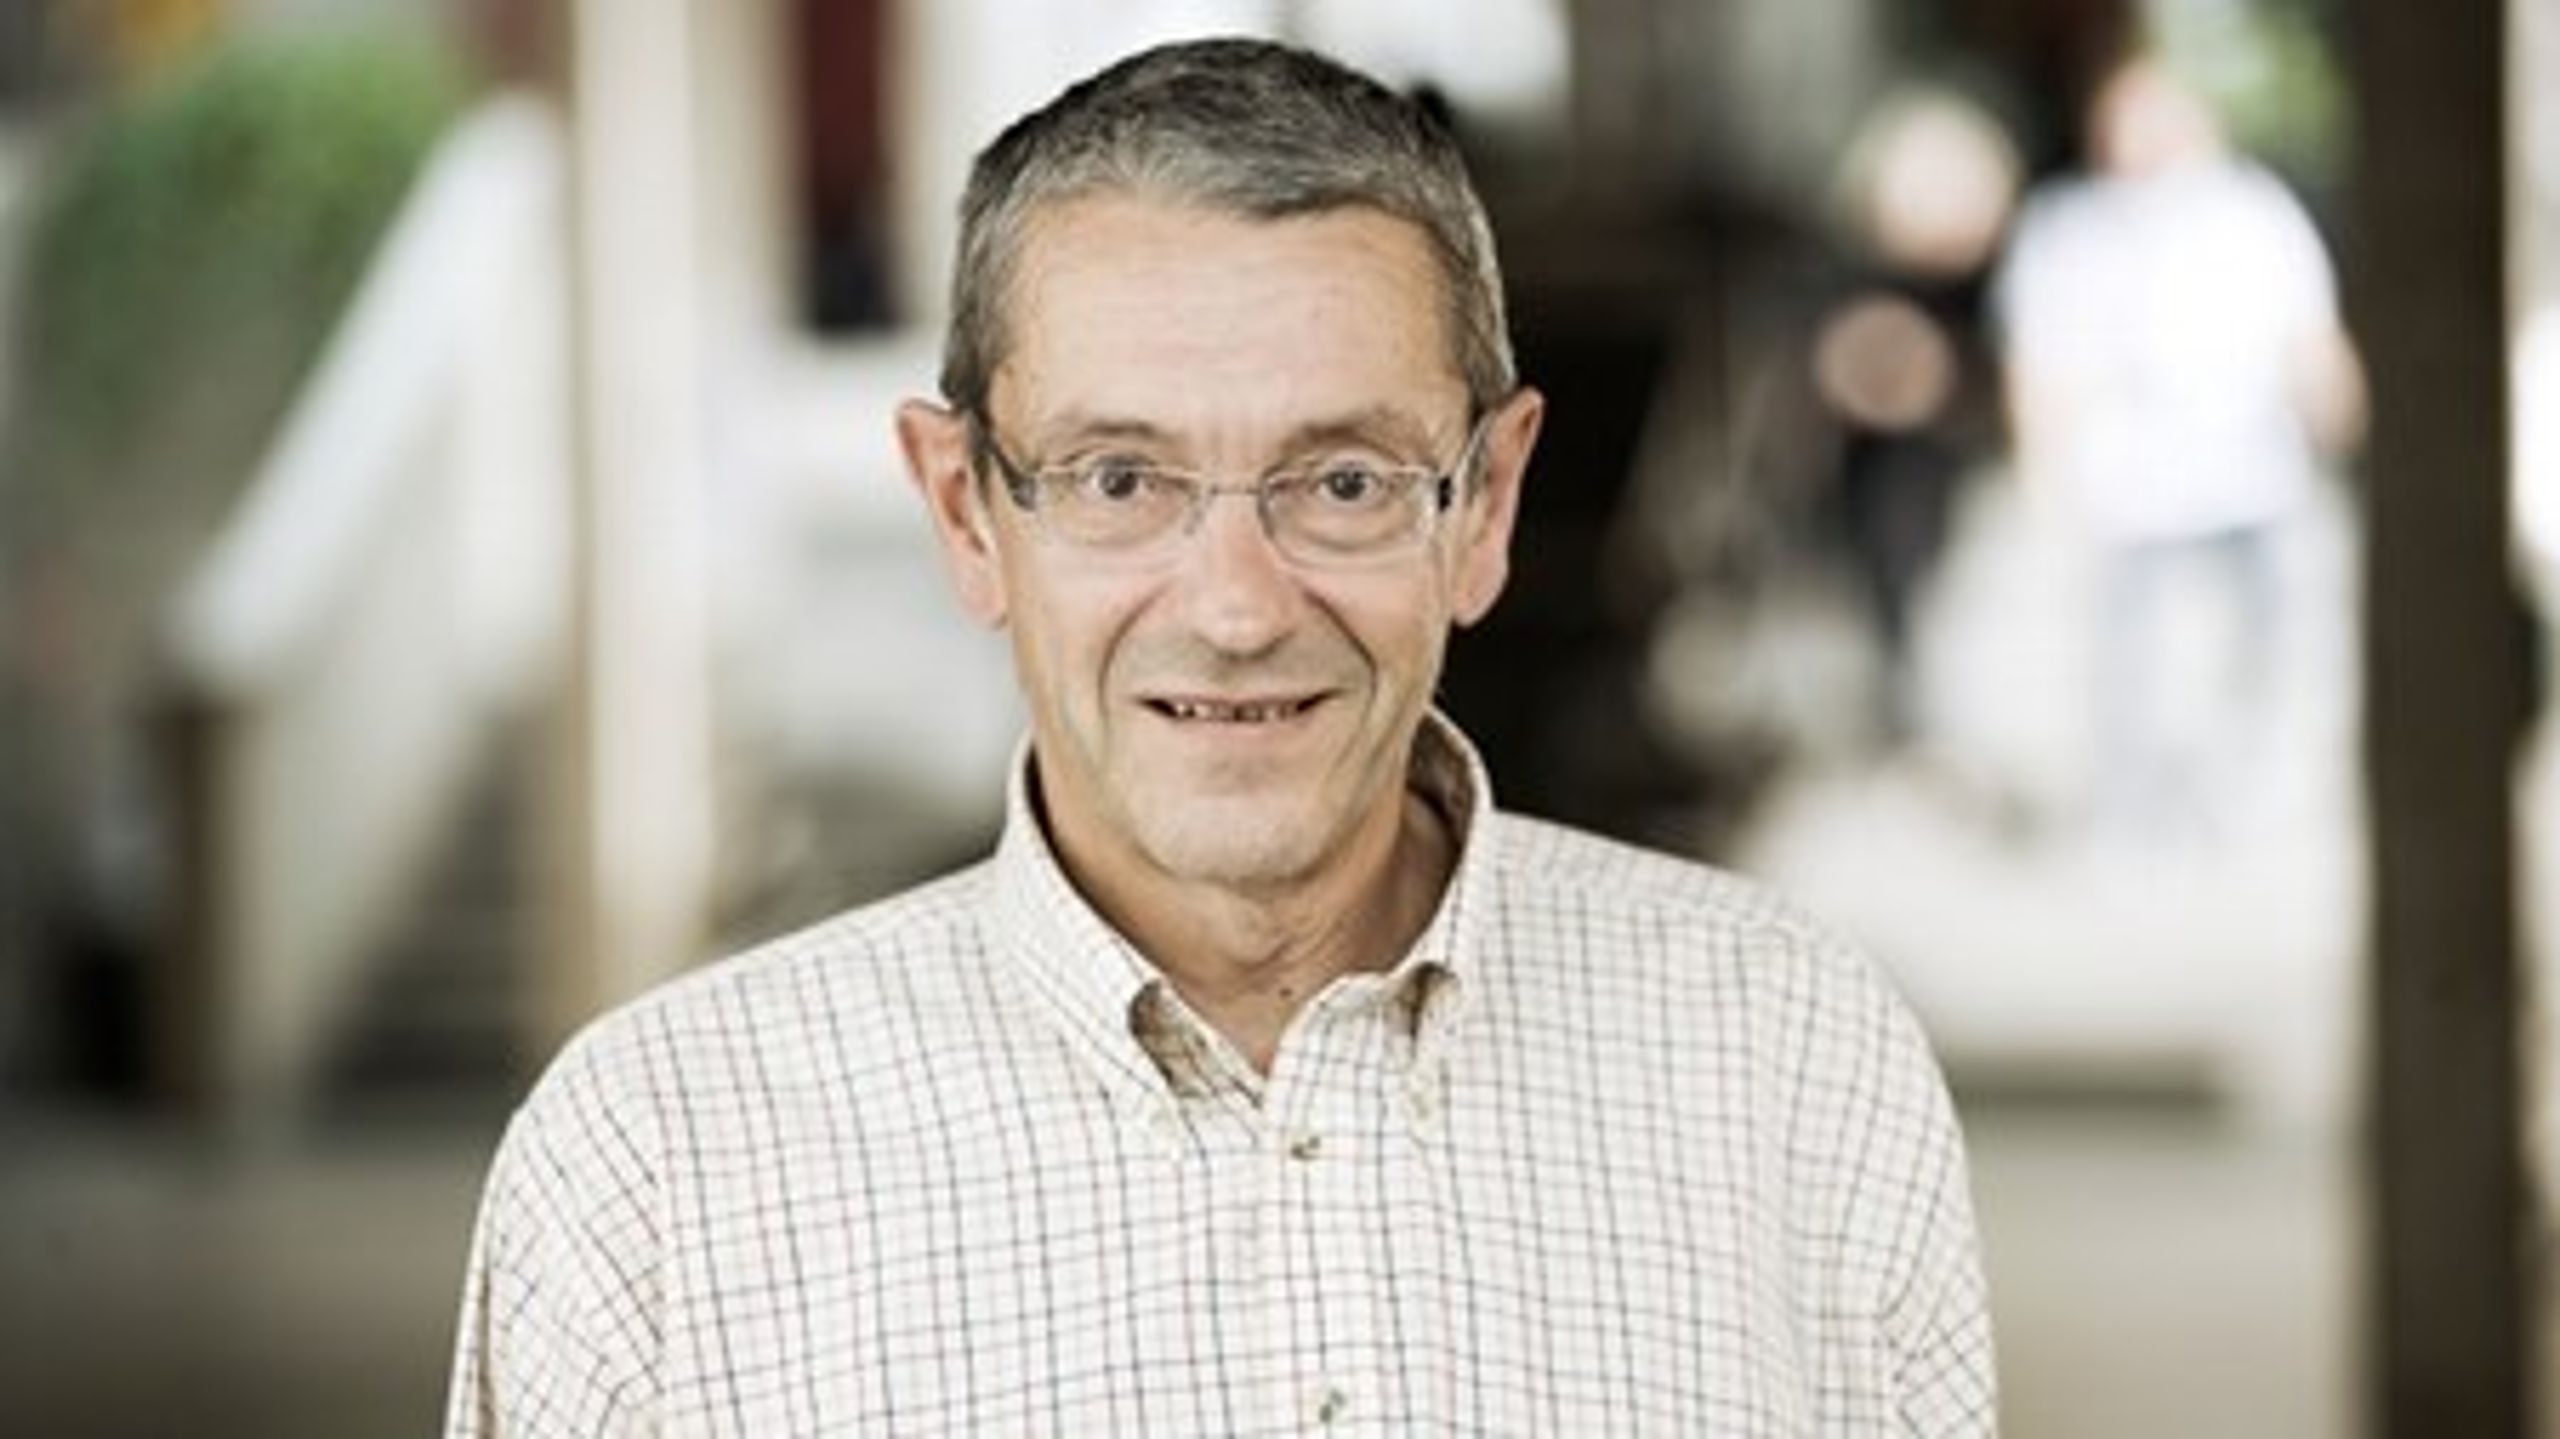 Oluf Jørgensen arbejdede frem til sidste år som forskningschef på Danmarks Medie- og Journalisthøjskole, men blev pensioneret per marts måned i år. Han fortsætter dog som offentlighedsrådgiver samme sted.&nbsp;(Anders Hviid)